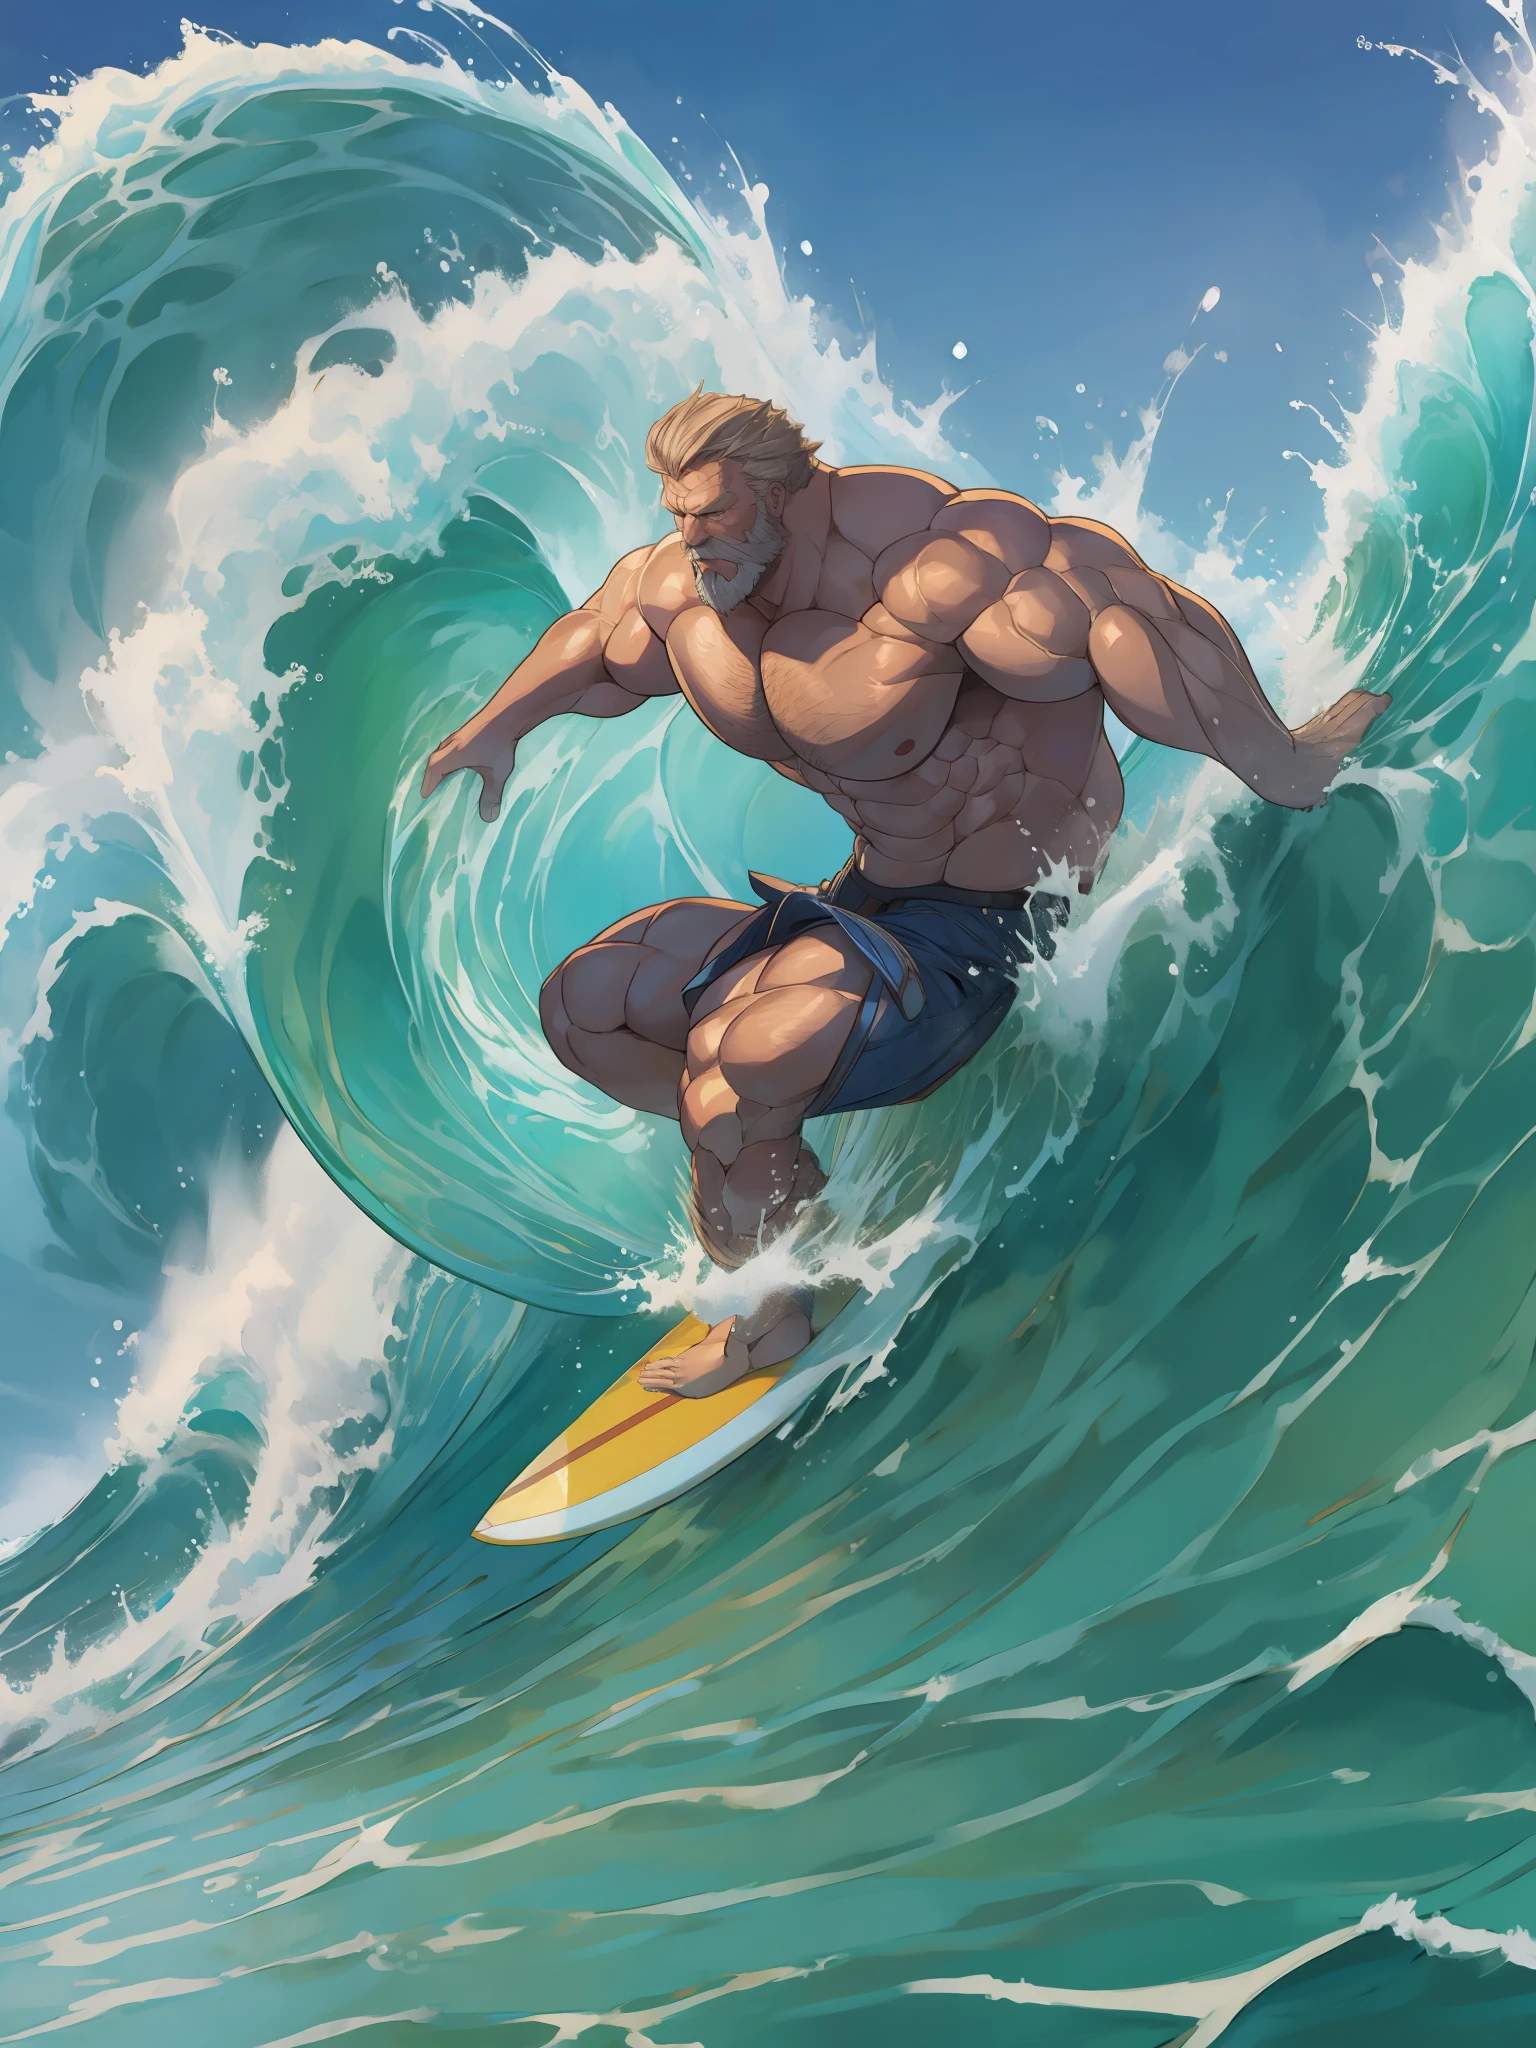 (muskulöser alter Mann reitet auf einer starken Surfwelle)